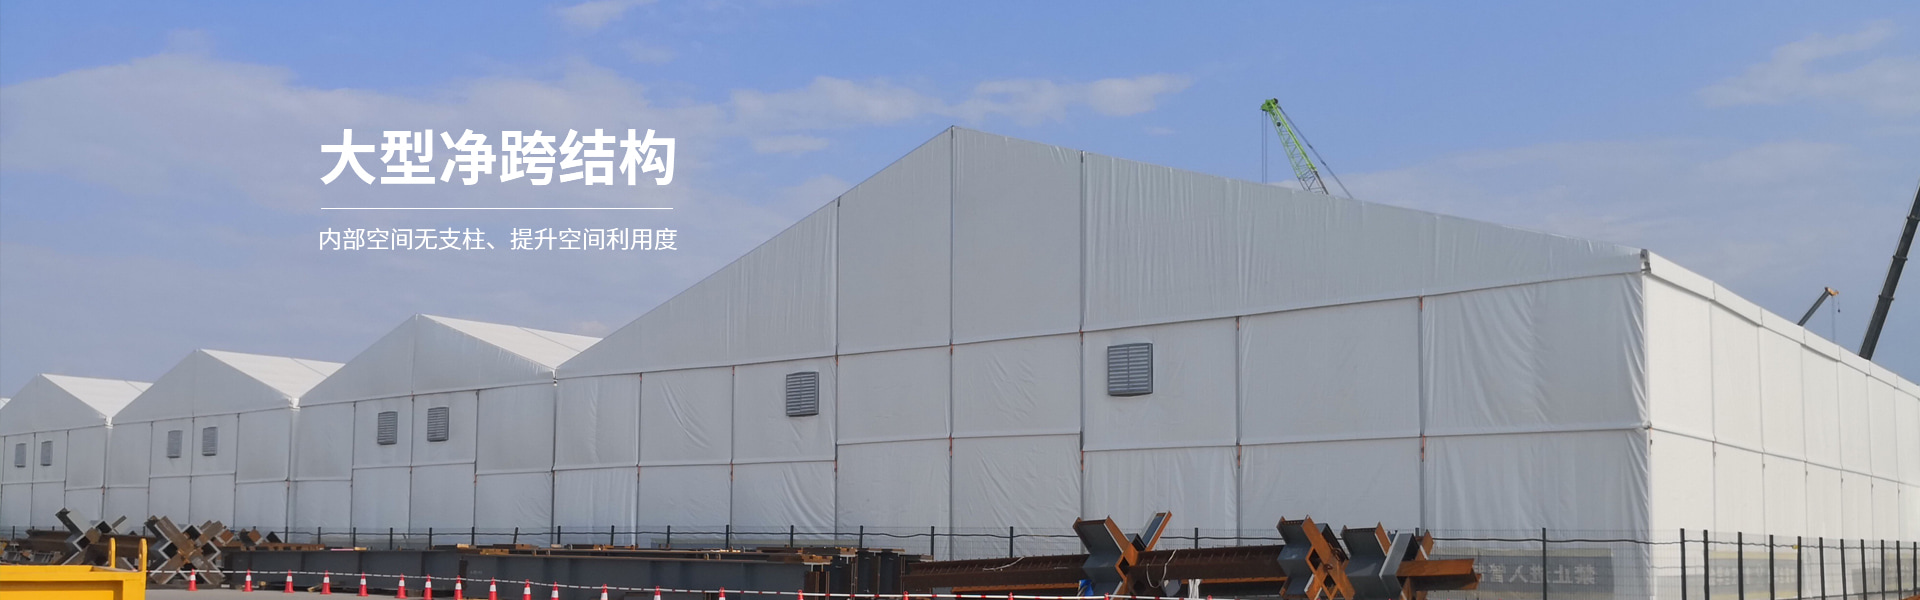 大型凈跨結構-工業倉儲篷房內部空間無支柱、提升空間利用度